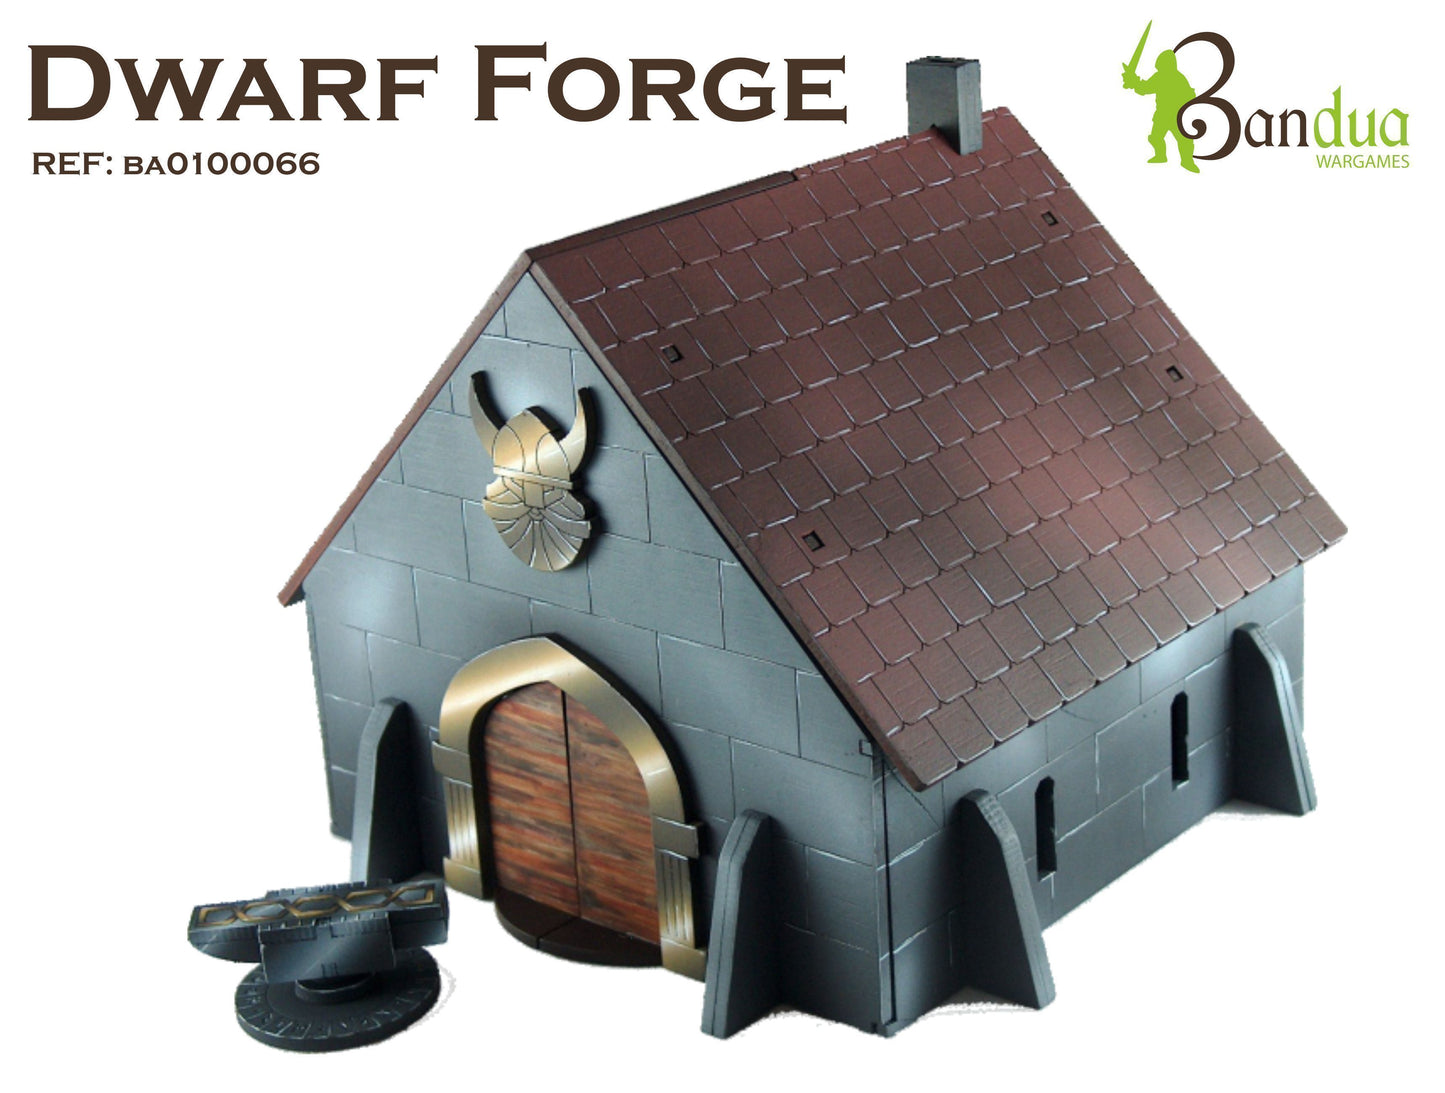 Bandua Dwarf Forge